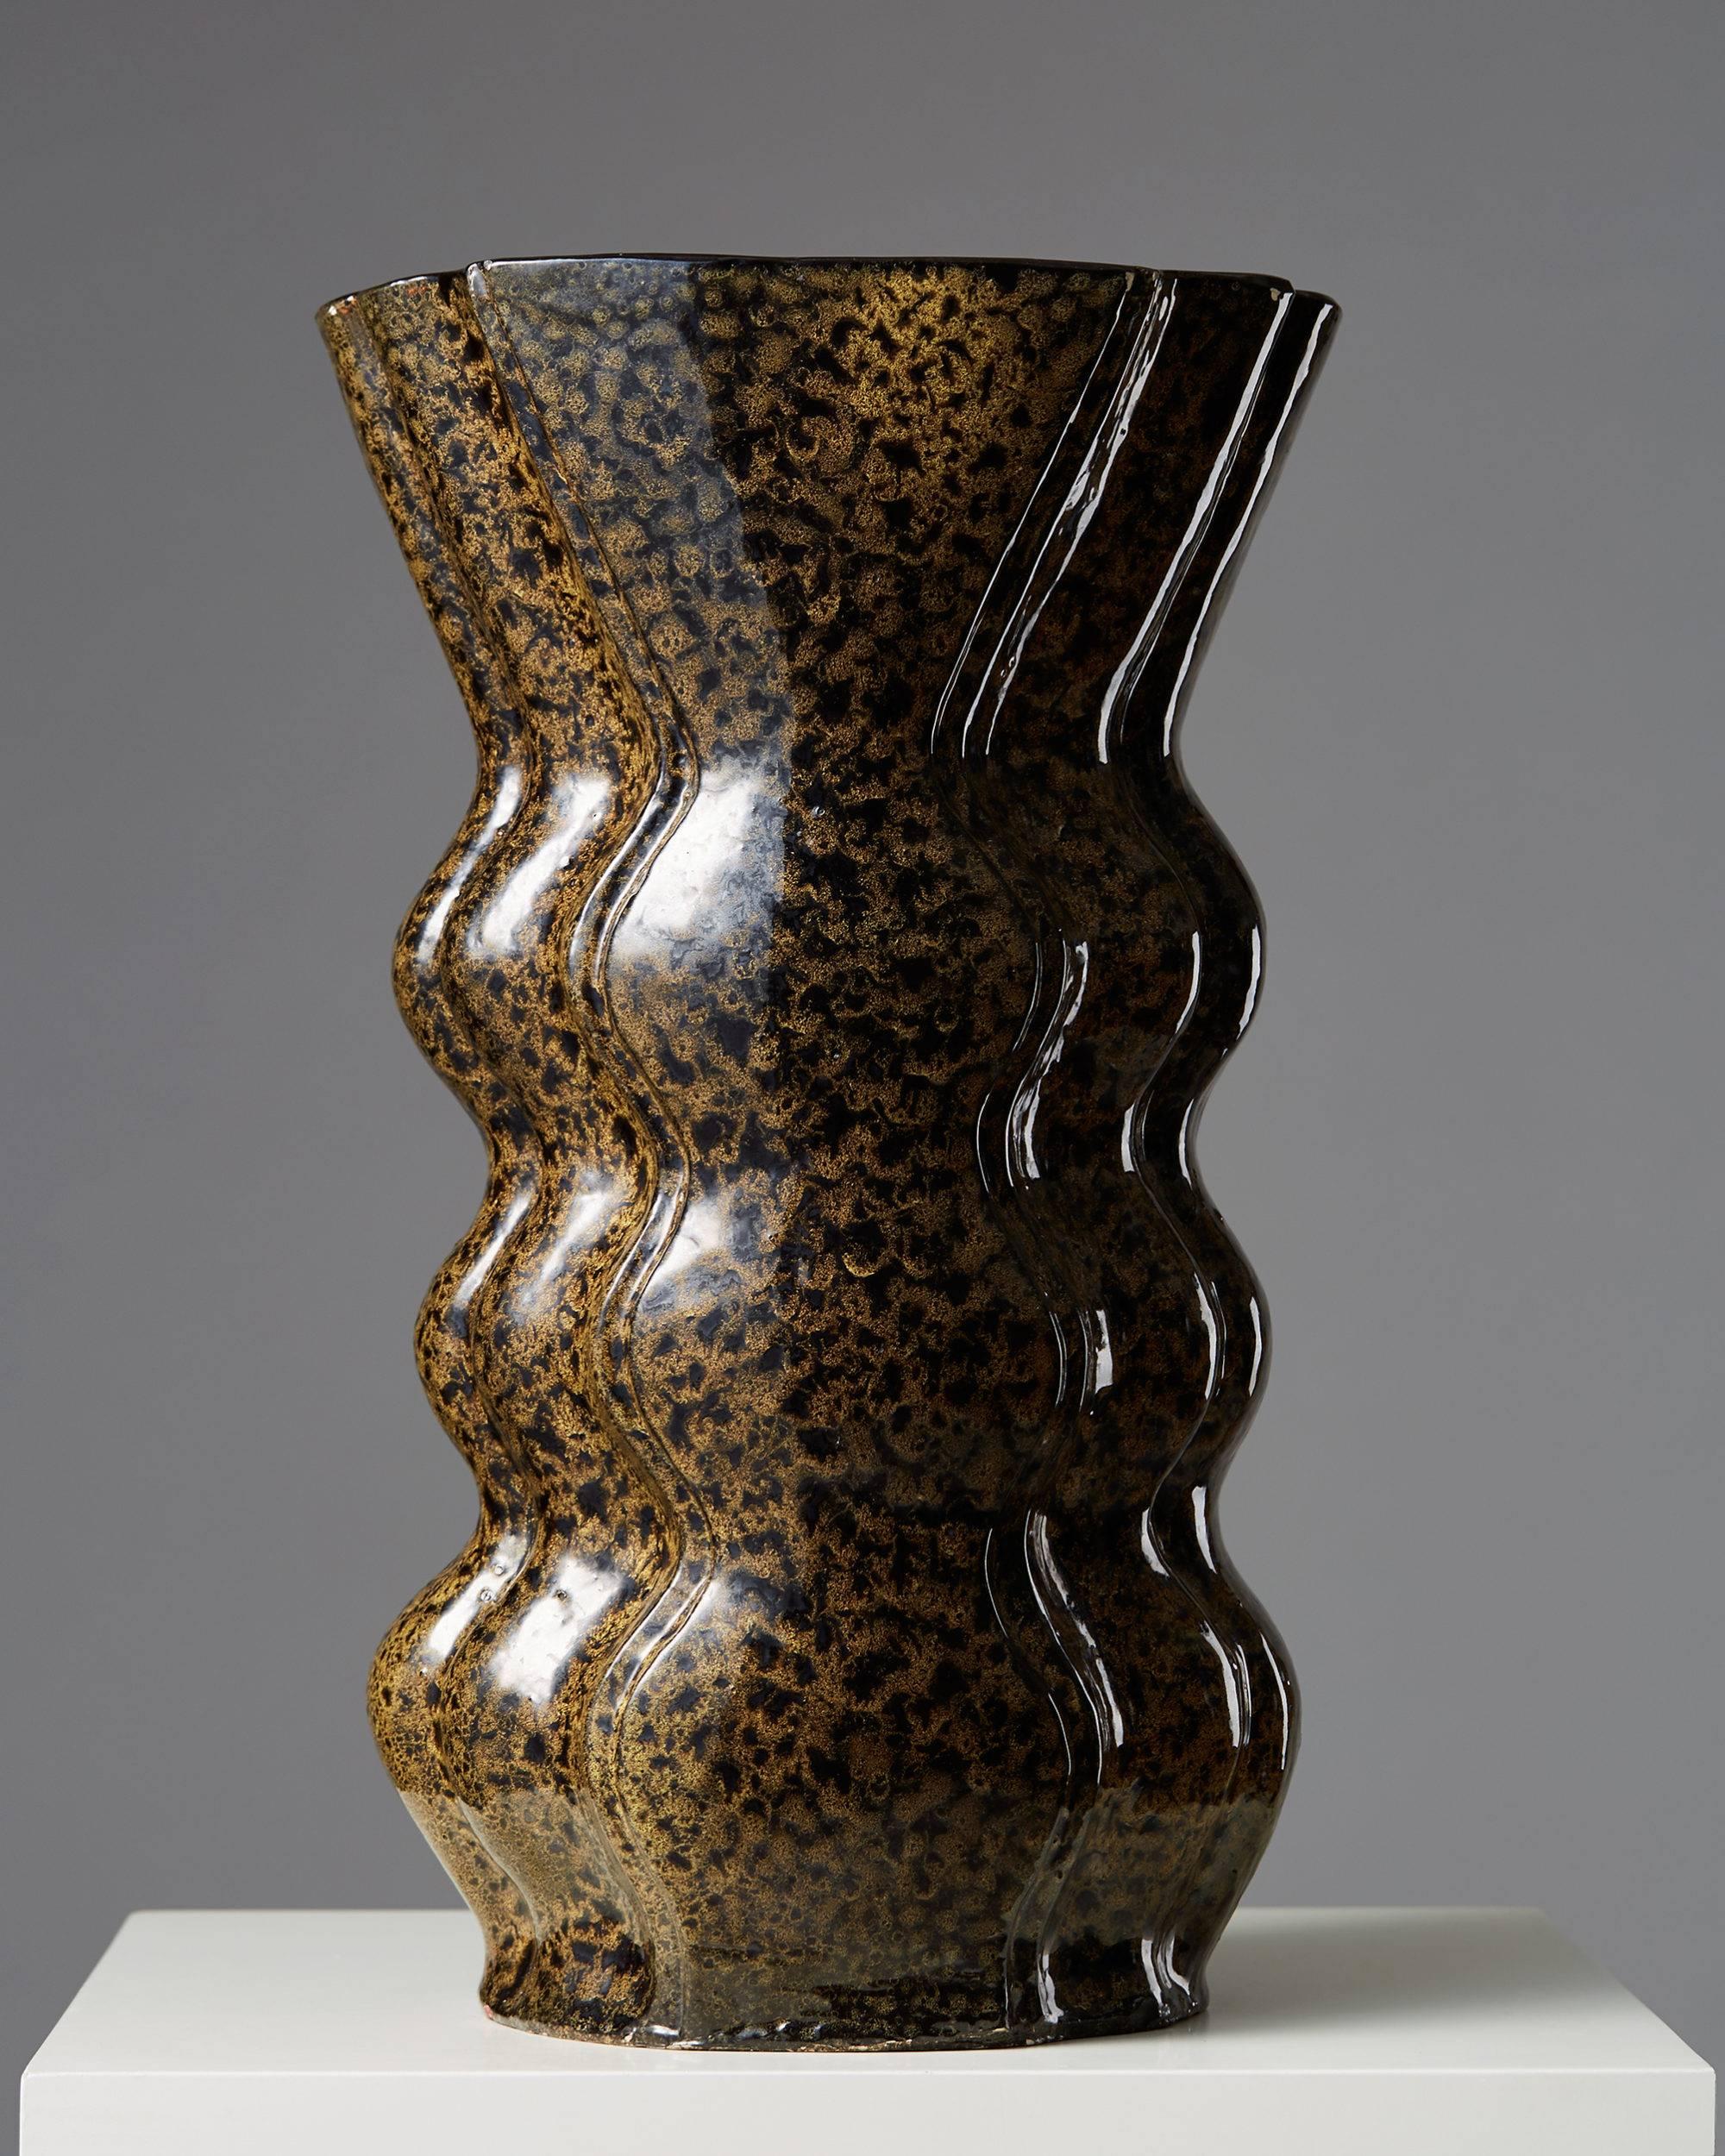 Vase designed by Allan Ebeling,
Sweden, 1940s.

Measures: H 40 cm/ 15 3/4